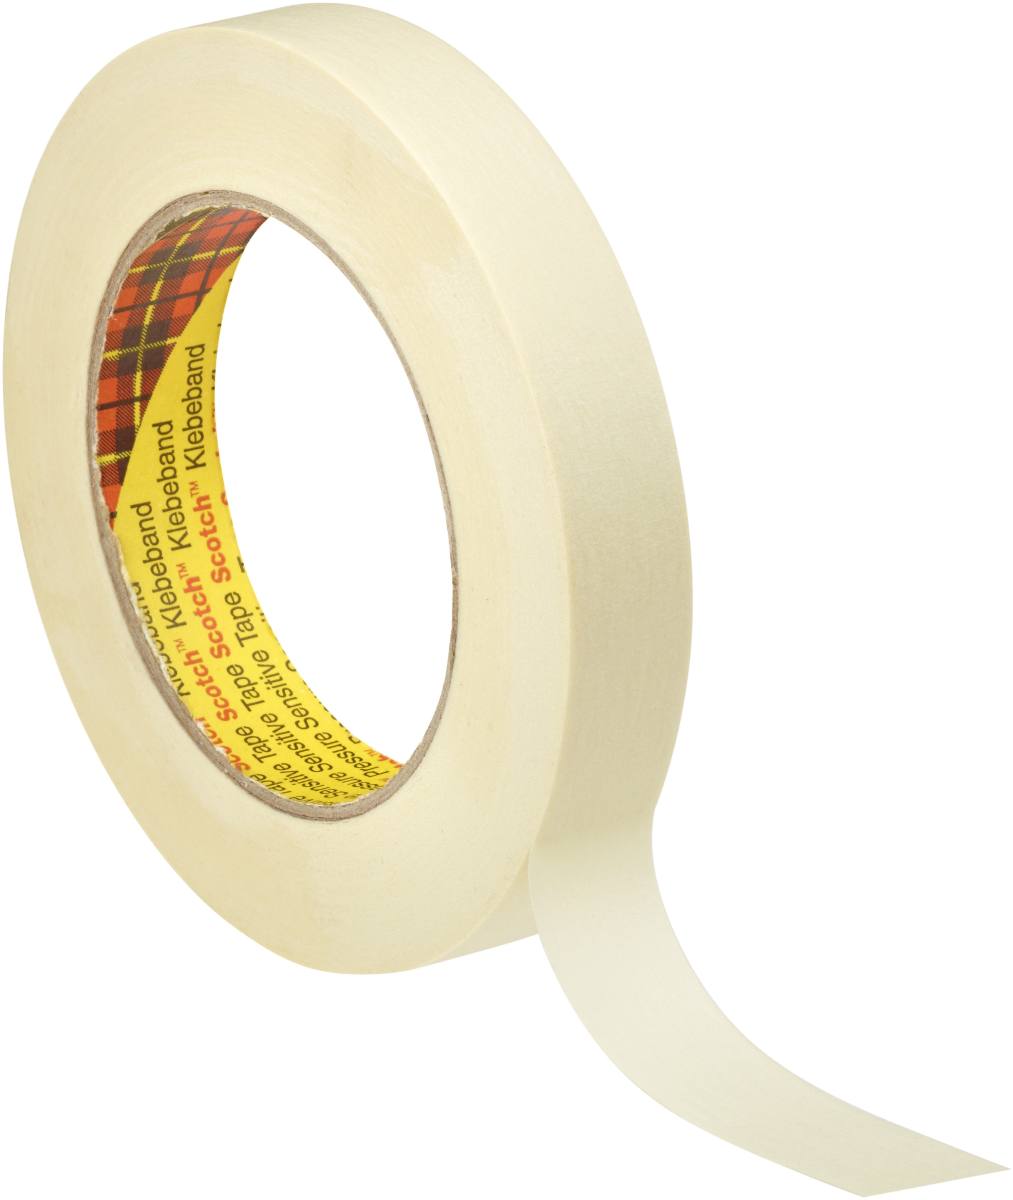 3M Scotch masking tape P3650, 48 mm x 50 m